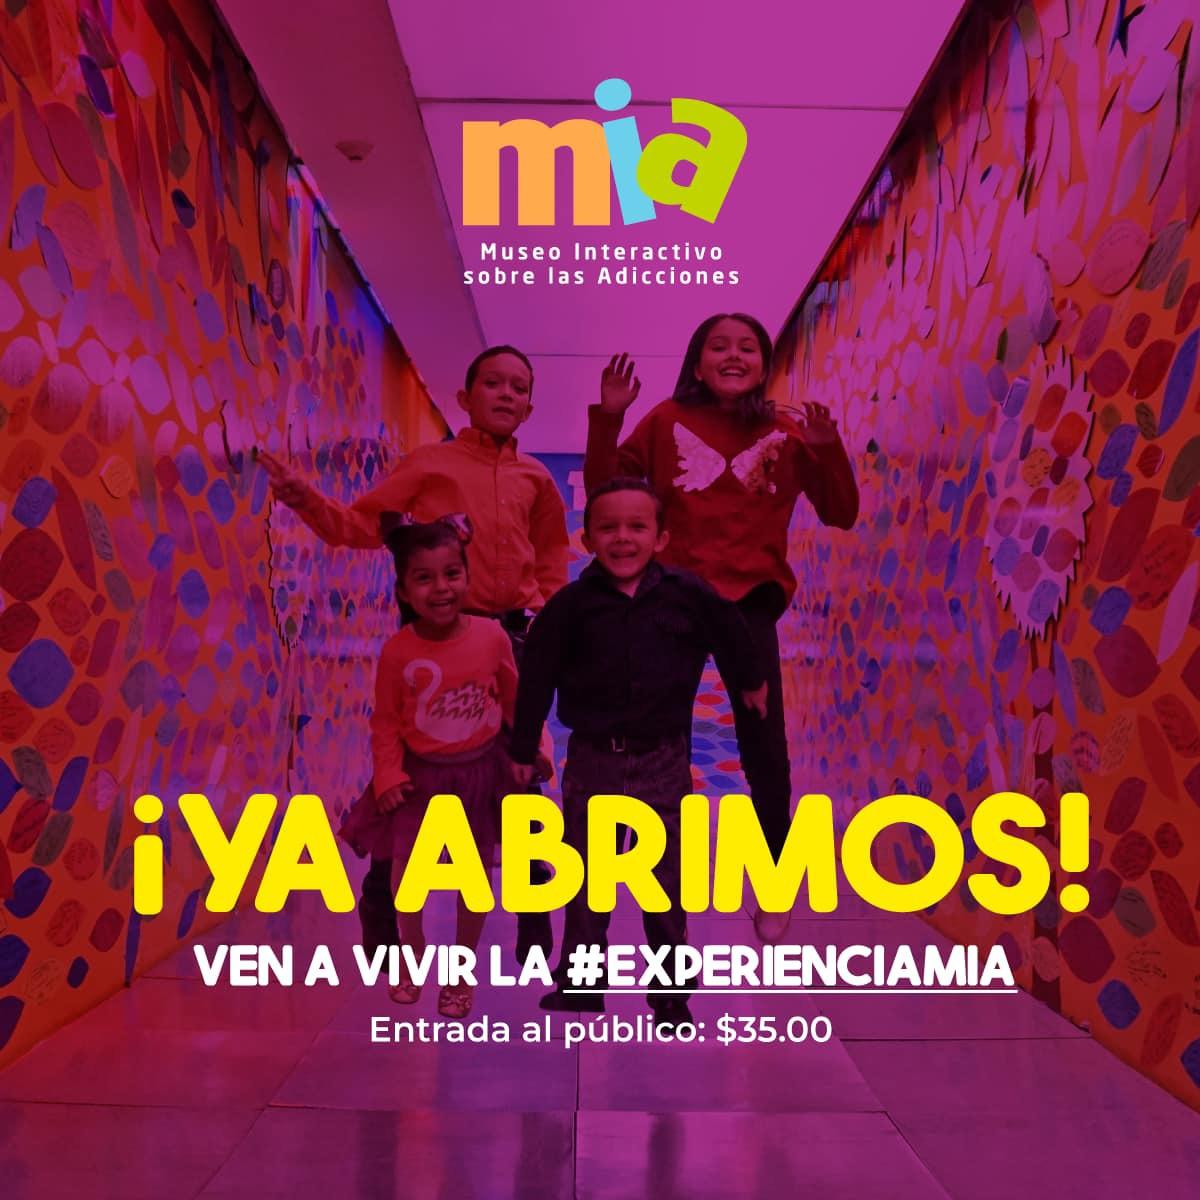 $!Museo Interactivo sobre las Adicciones reanuda actividades tras el periodo de confinamiento, en Culiacán